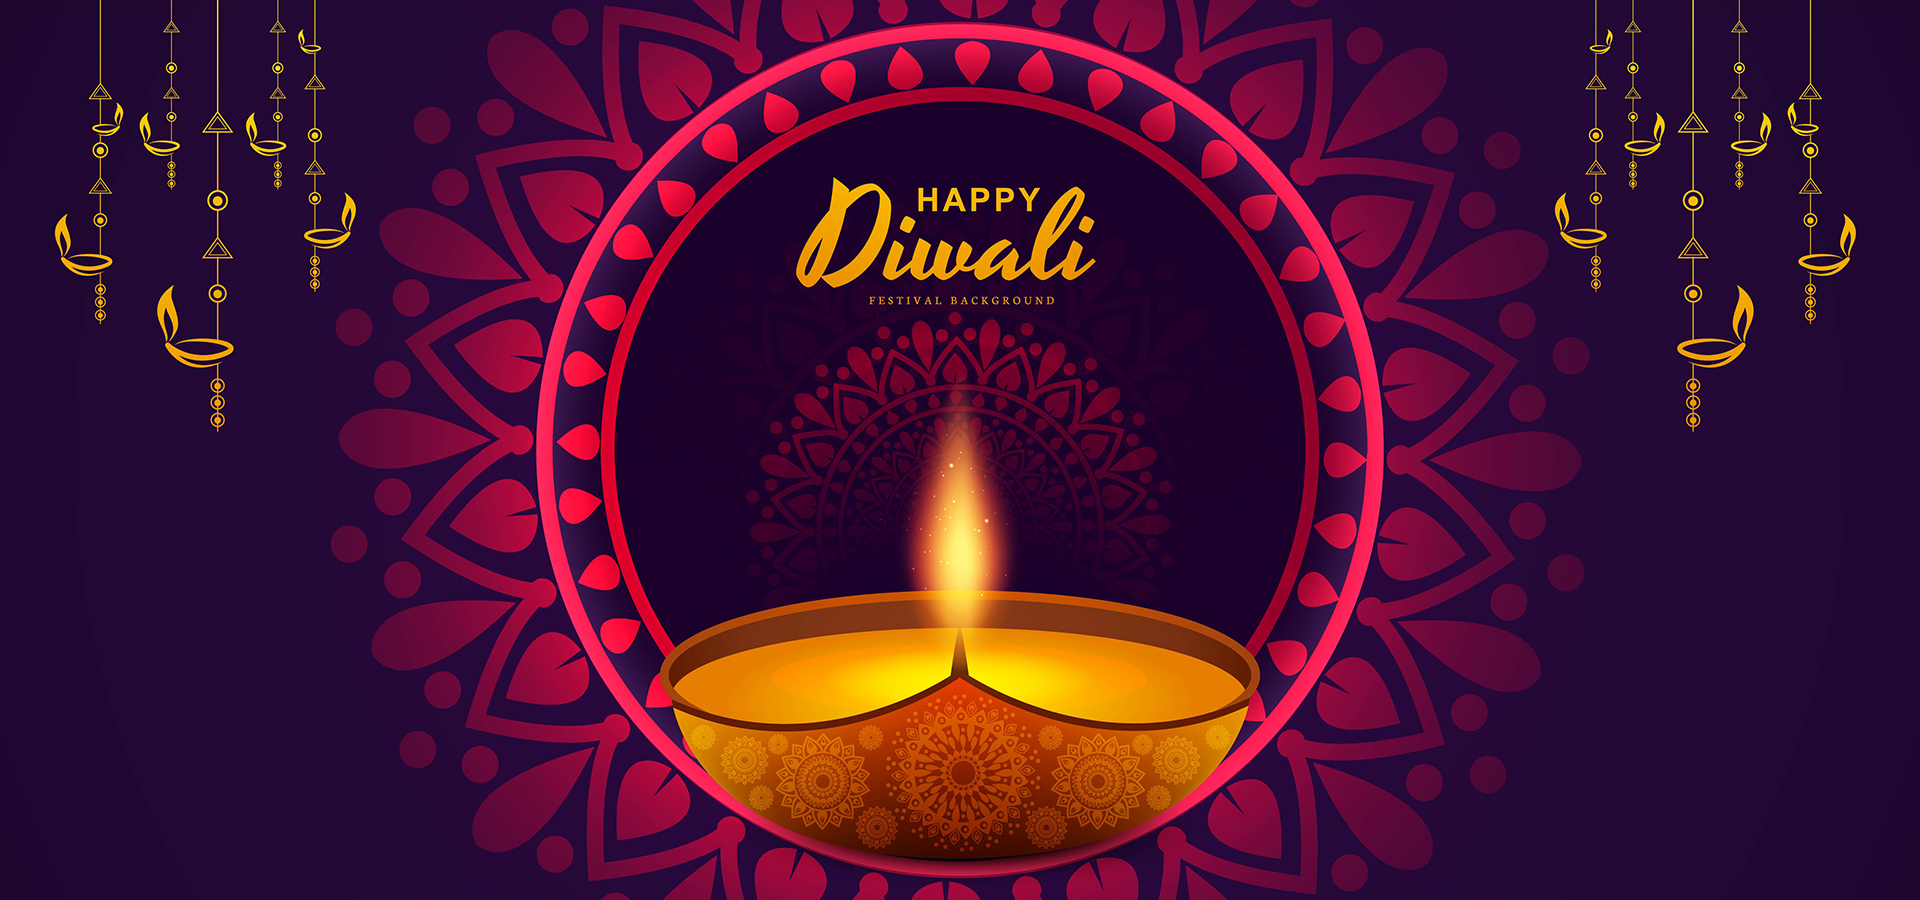 Diwali Images  Free Download on Freepik